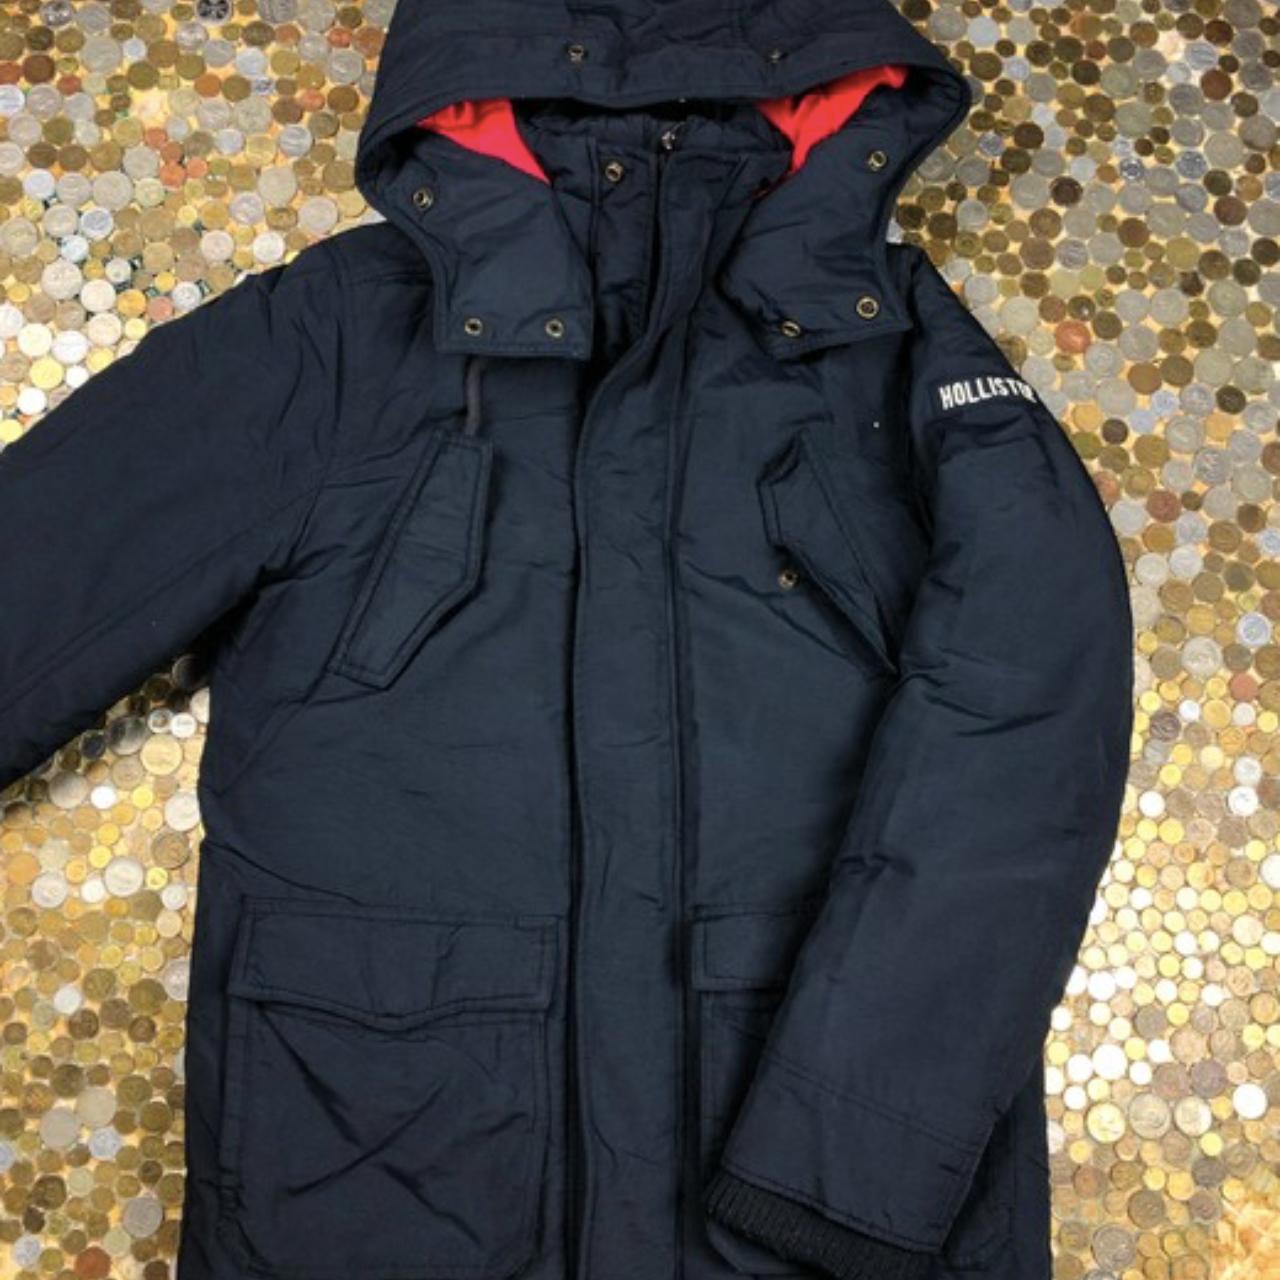 Holister vintage winter jacket Size M Lenght: 80... - Depop